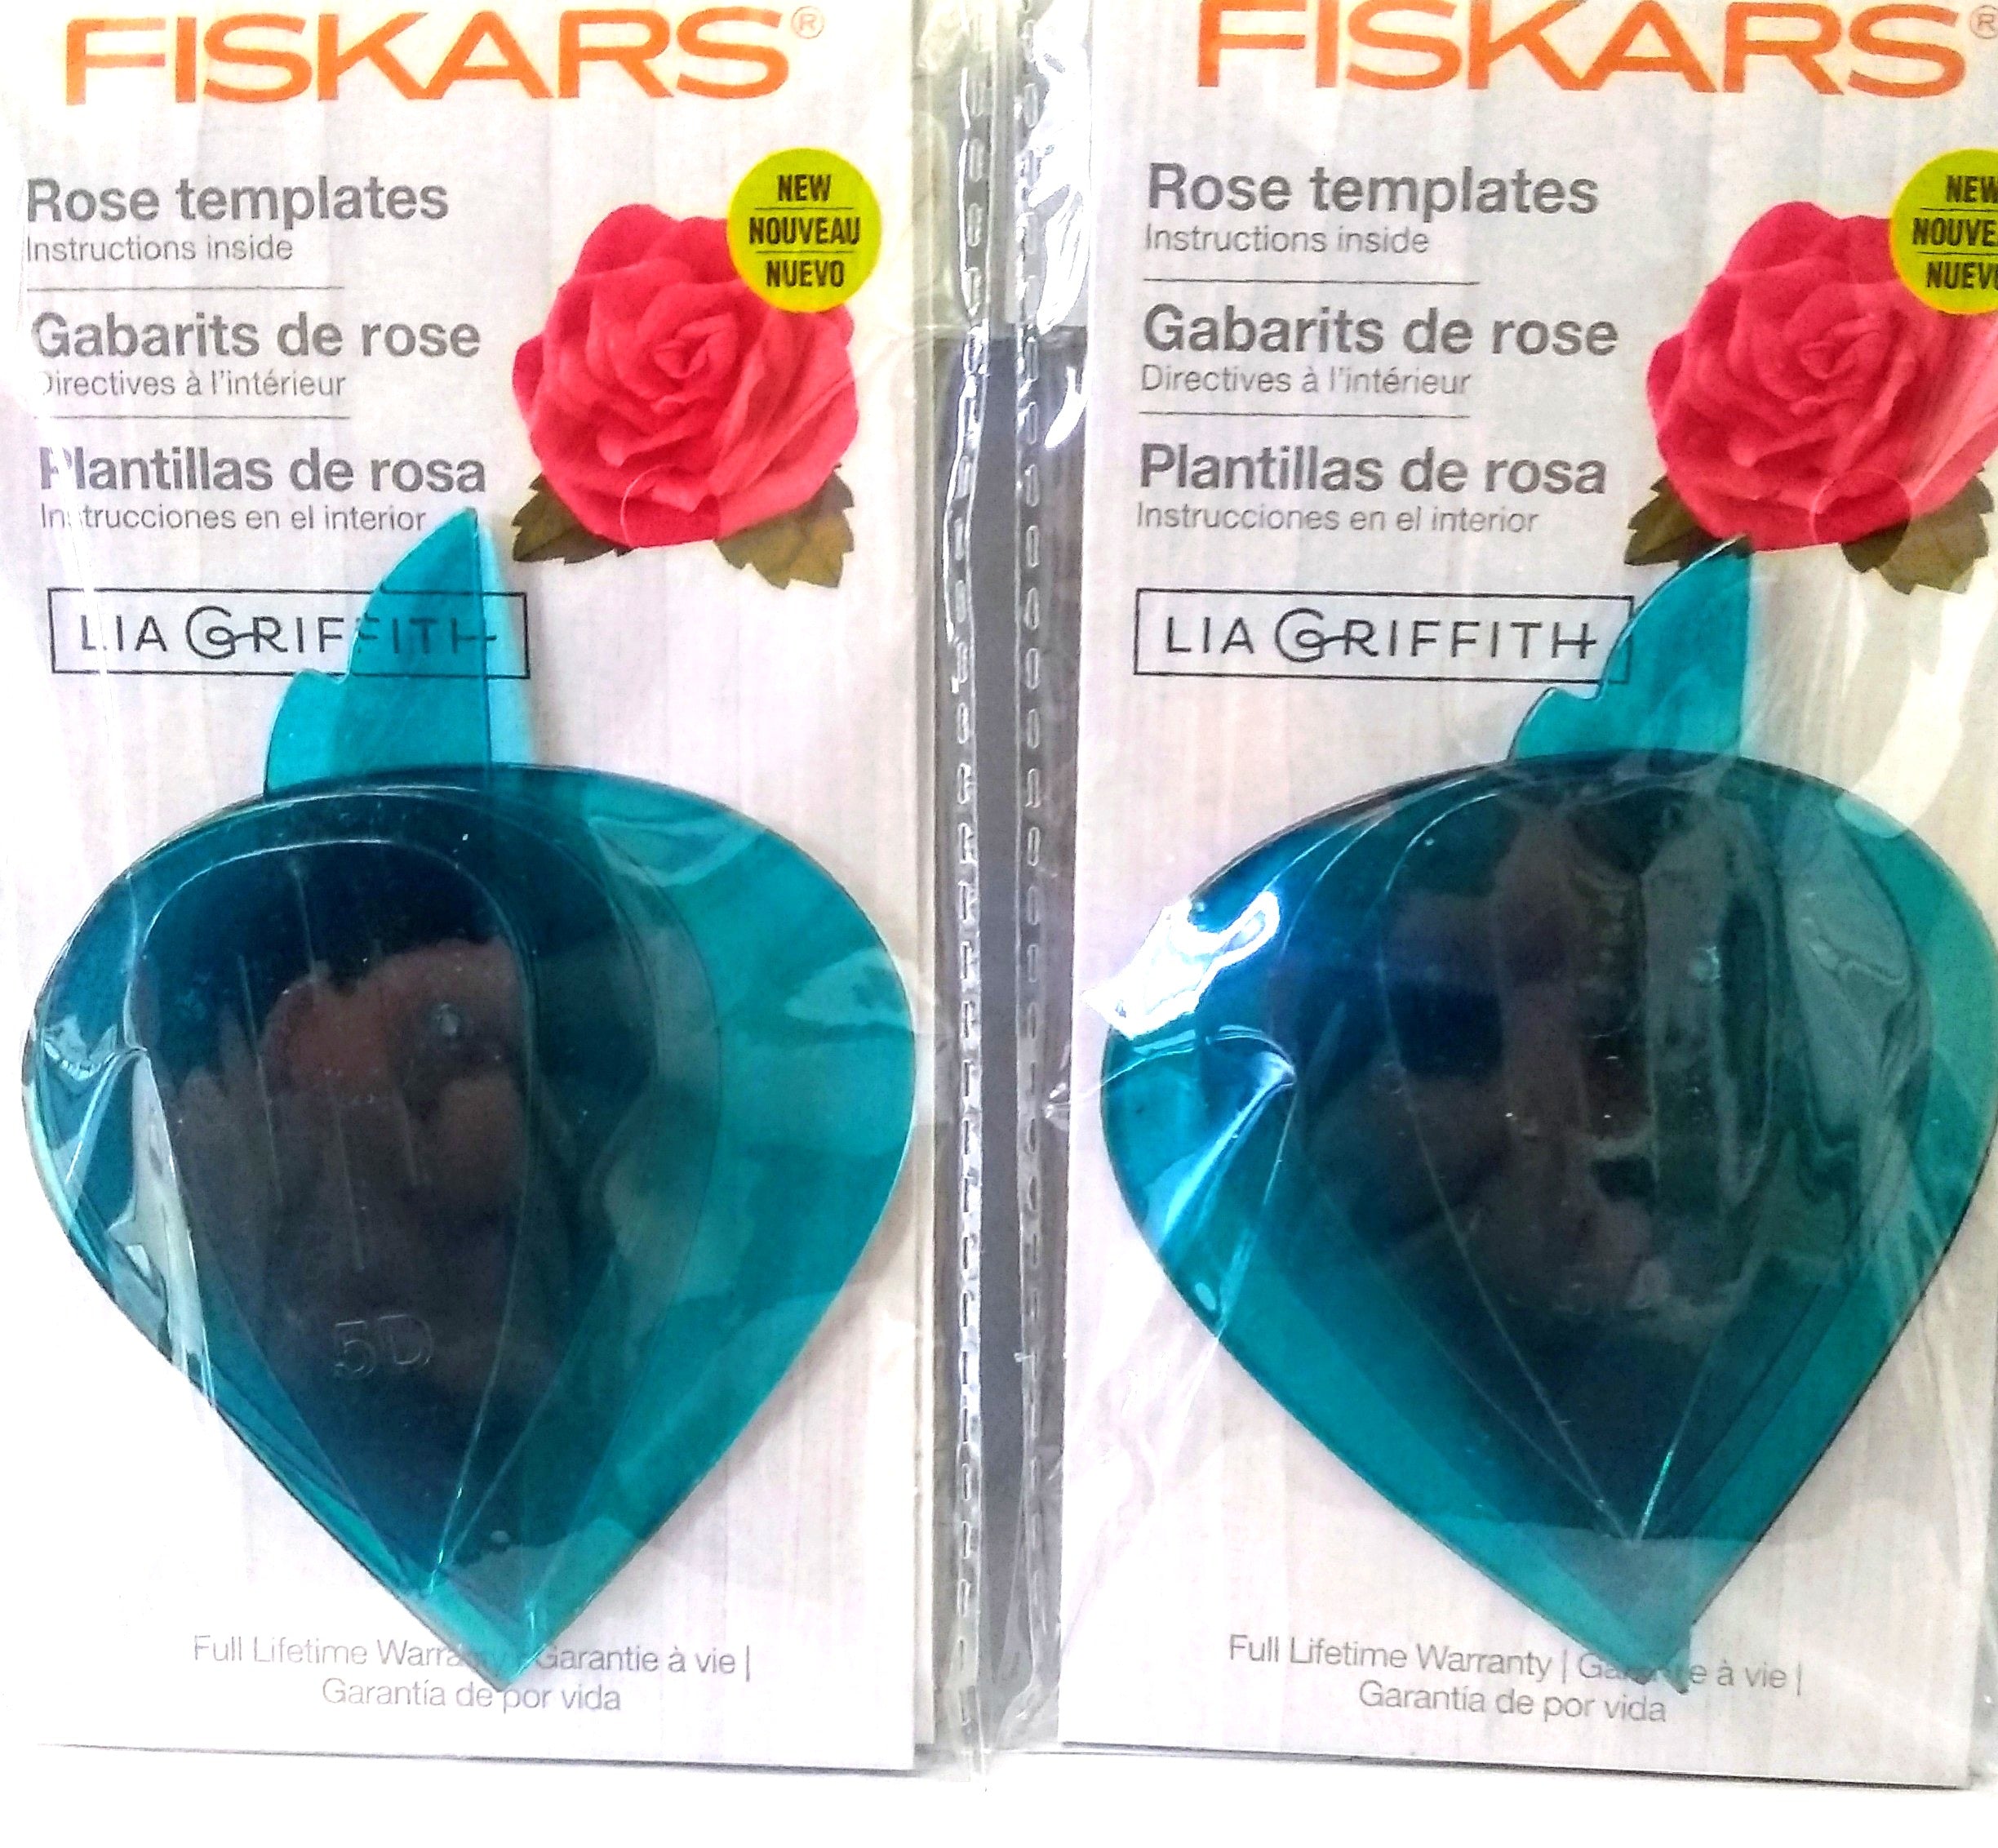 Fiskars 127660-1001 Lia Griffith Designer Rose Flower Template, Teal Green 2 Pks